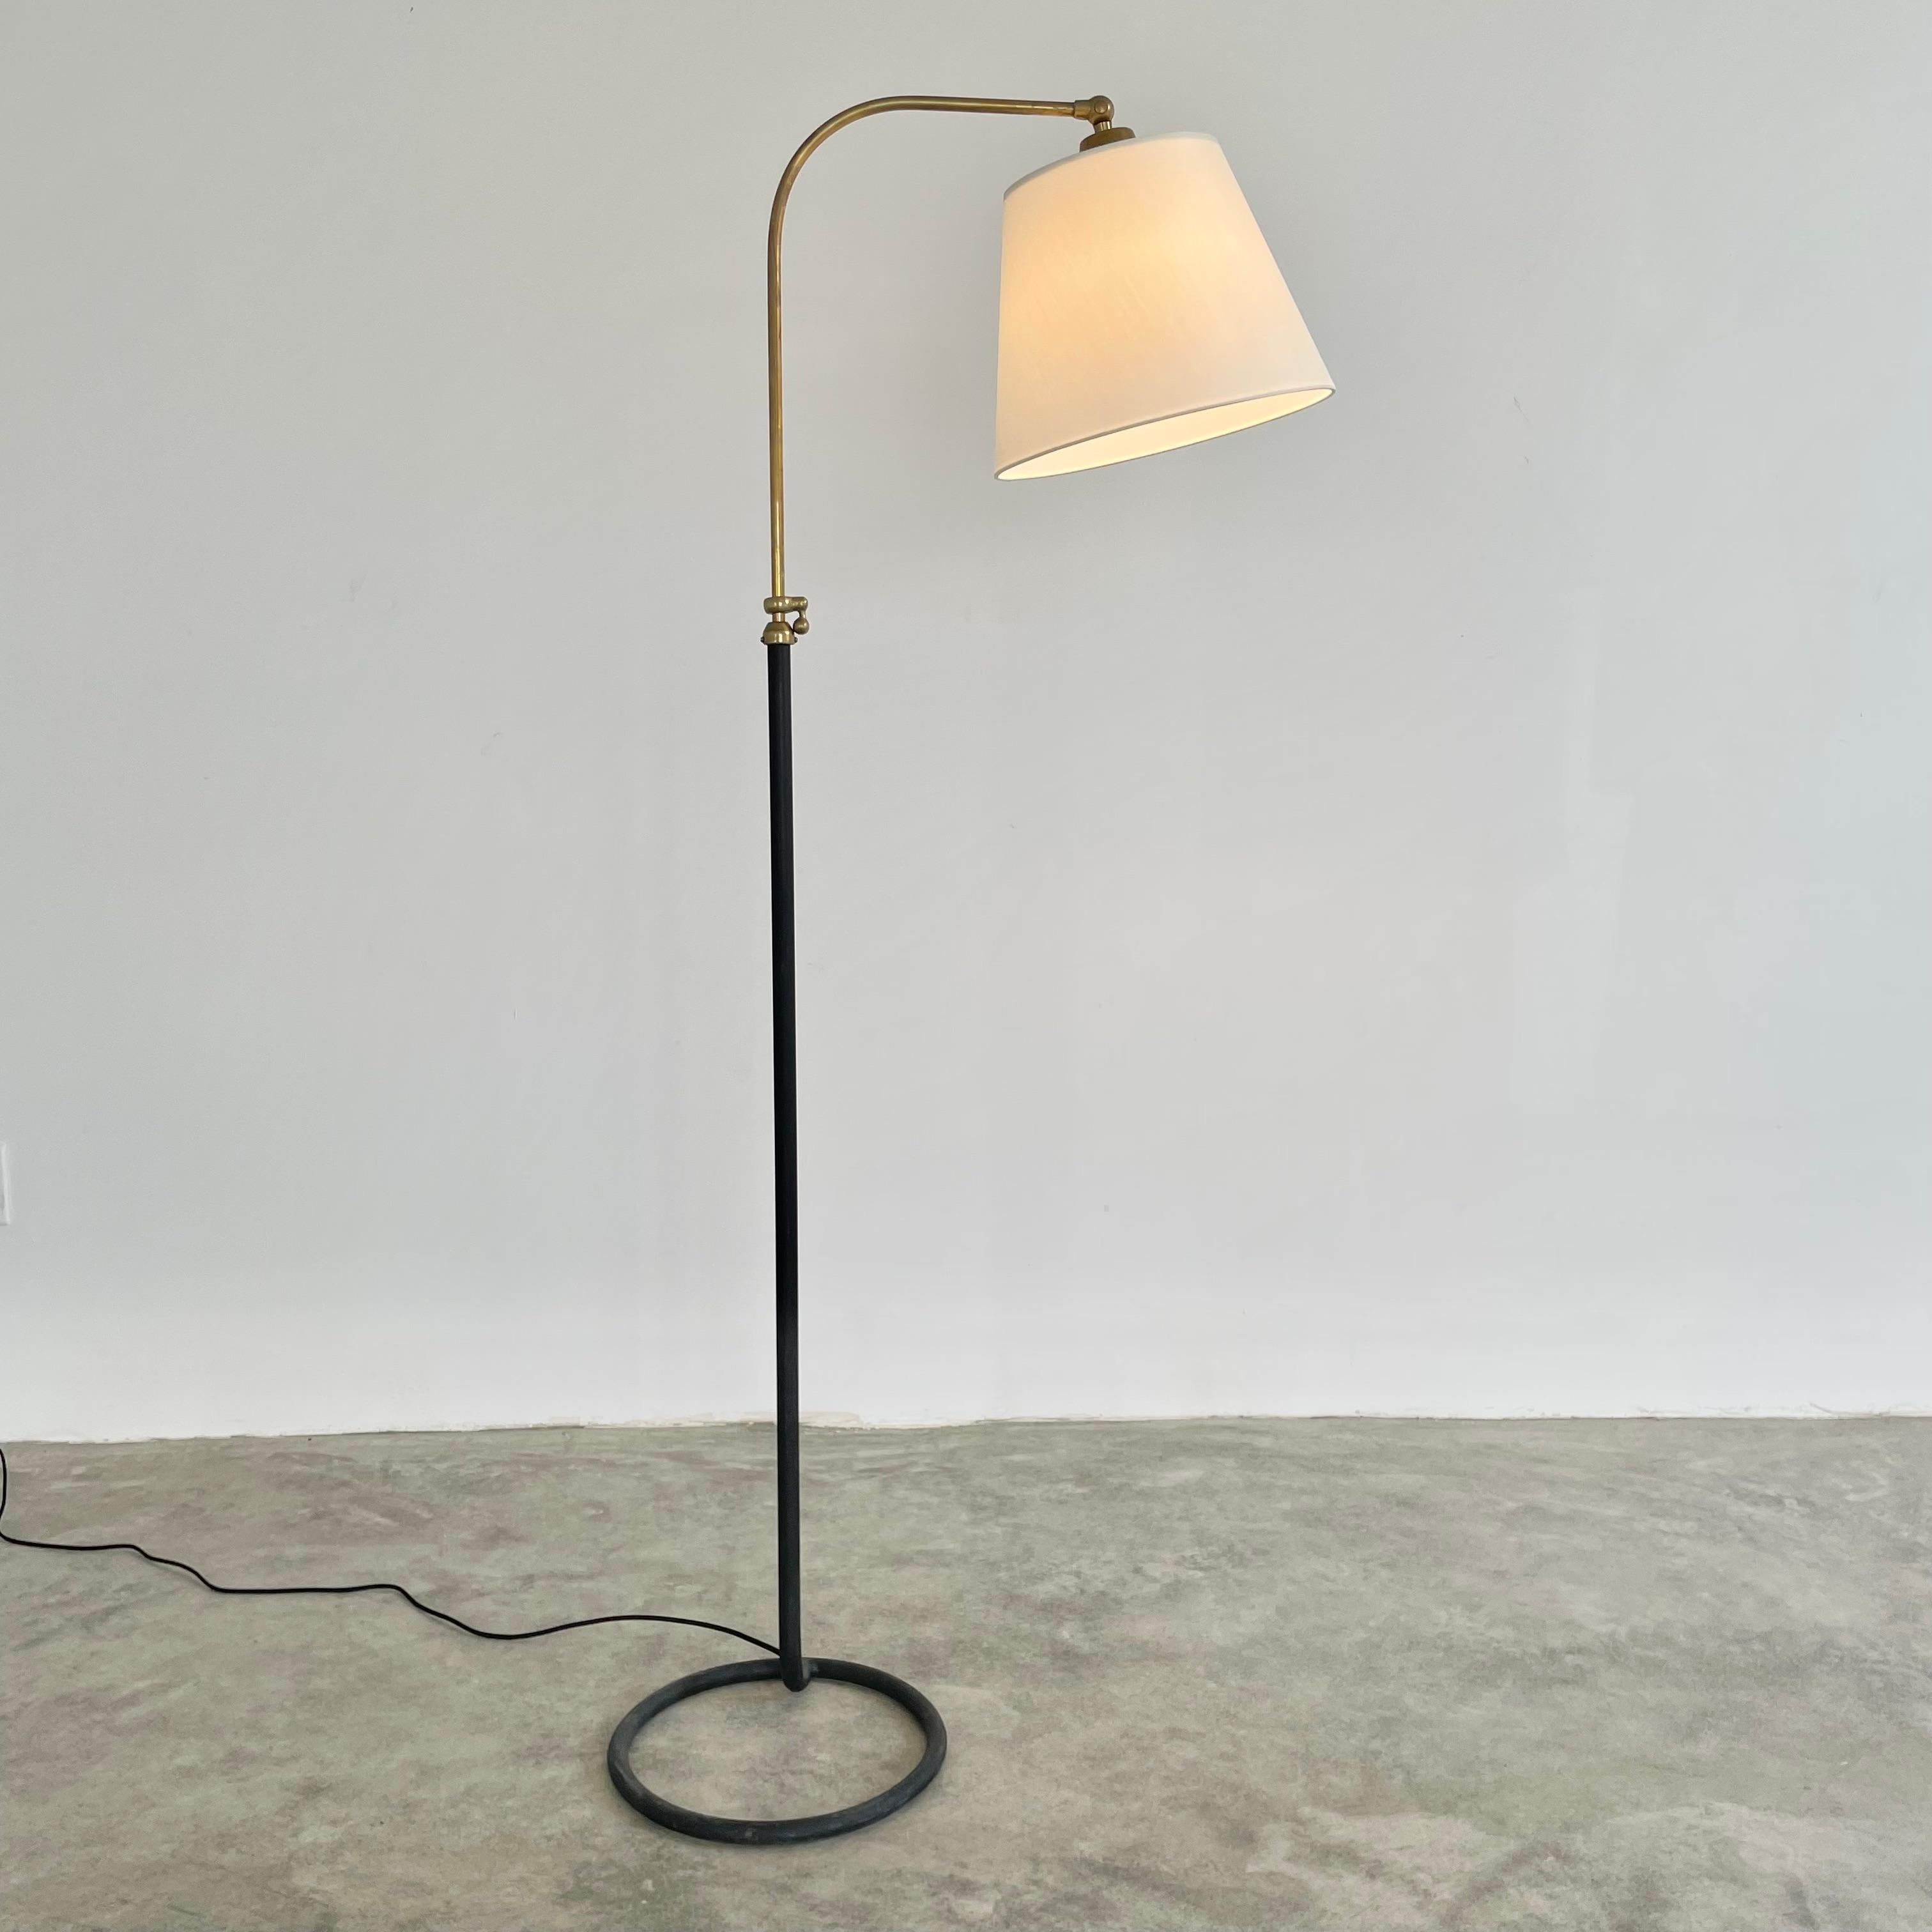 Beau lampadaire en laiton et métal dans le style du designer français Jacques Adnet. Vers les années 1950. La base circulaire en métal et la tige sont une seule pièce solide. Tige courbe en laiton, réglable en hauteur. Nouvel abat-jour en soie et